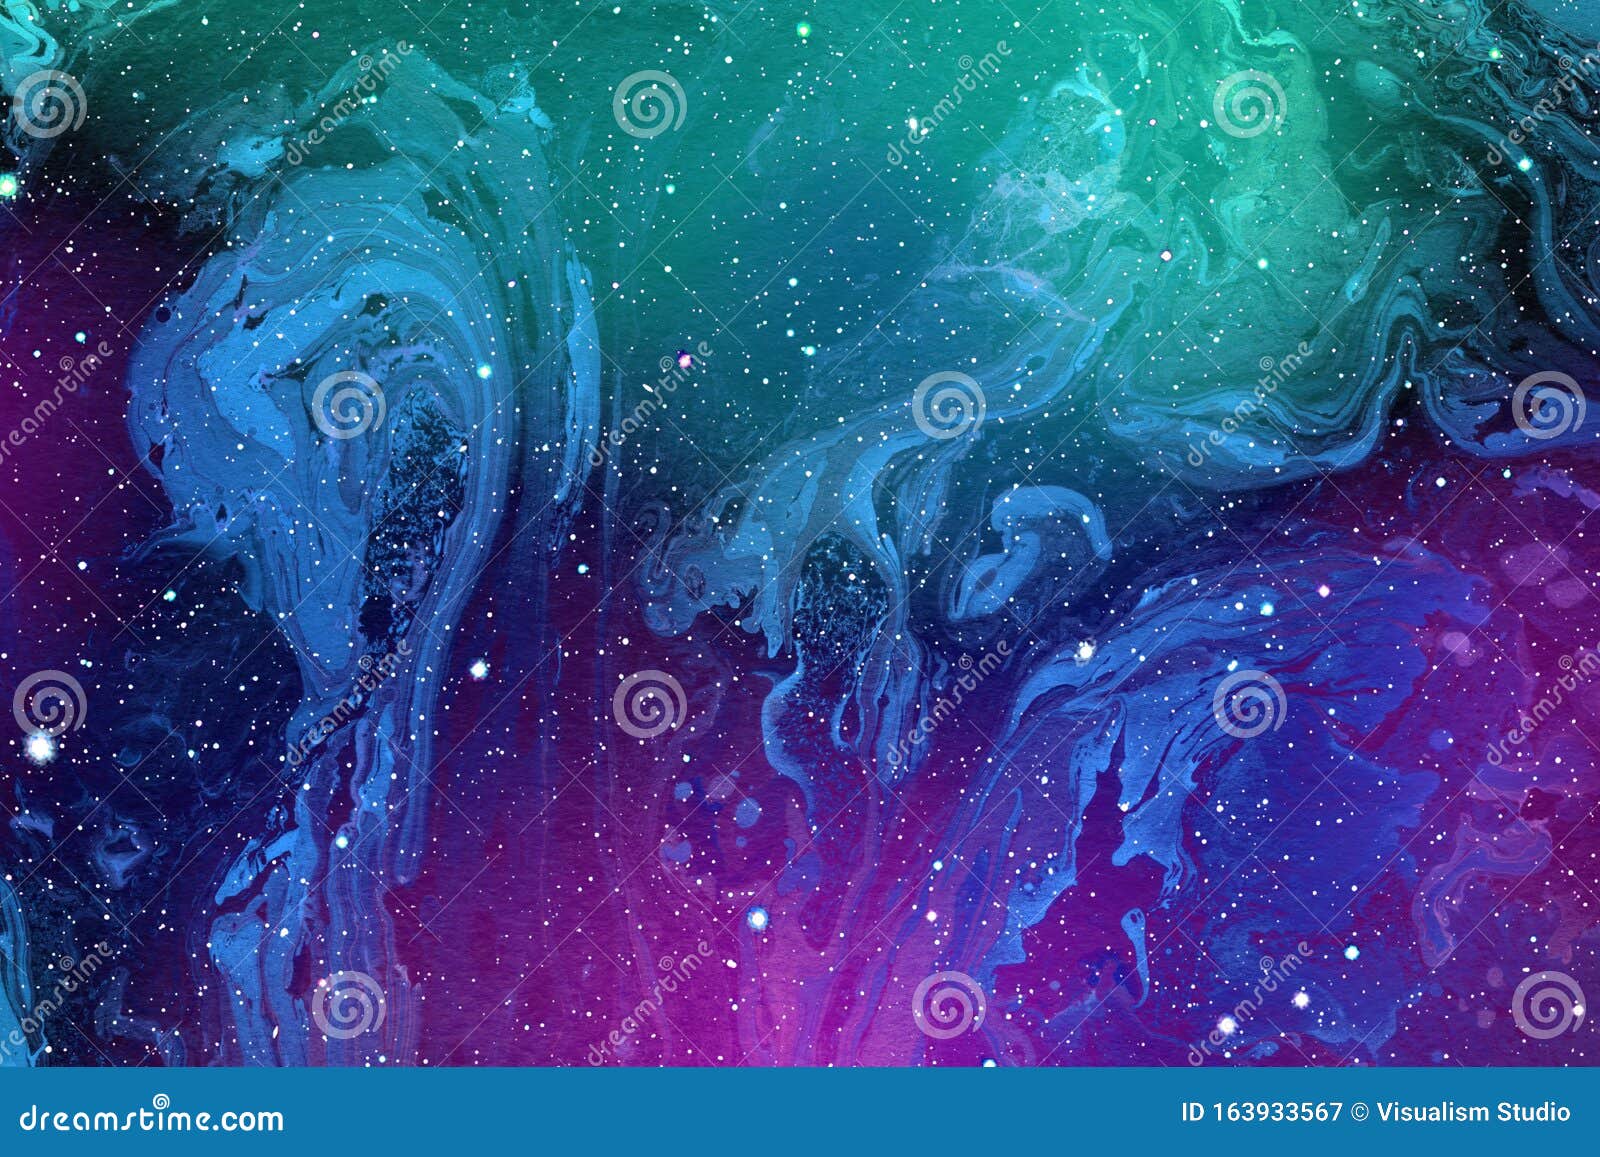 Sfondo Di Galassie Astratte Con Stelle E Pianeti Con Colorati Motivi Astratti Dell Universo Spazio Notturno Illustrazione Di Stock Illustrazione Di Universo Latteo 163933567